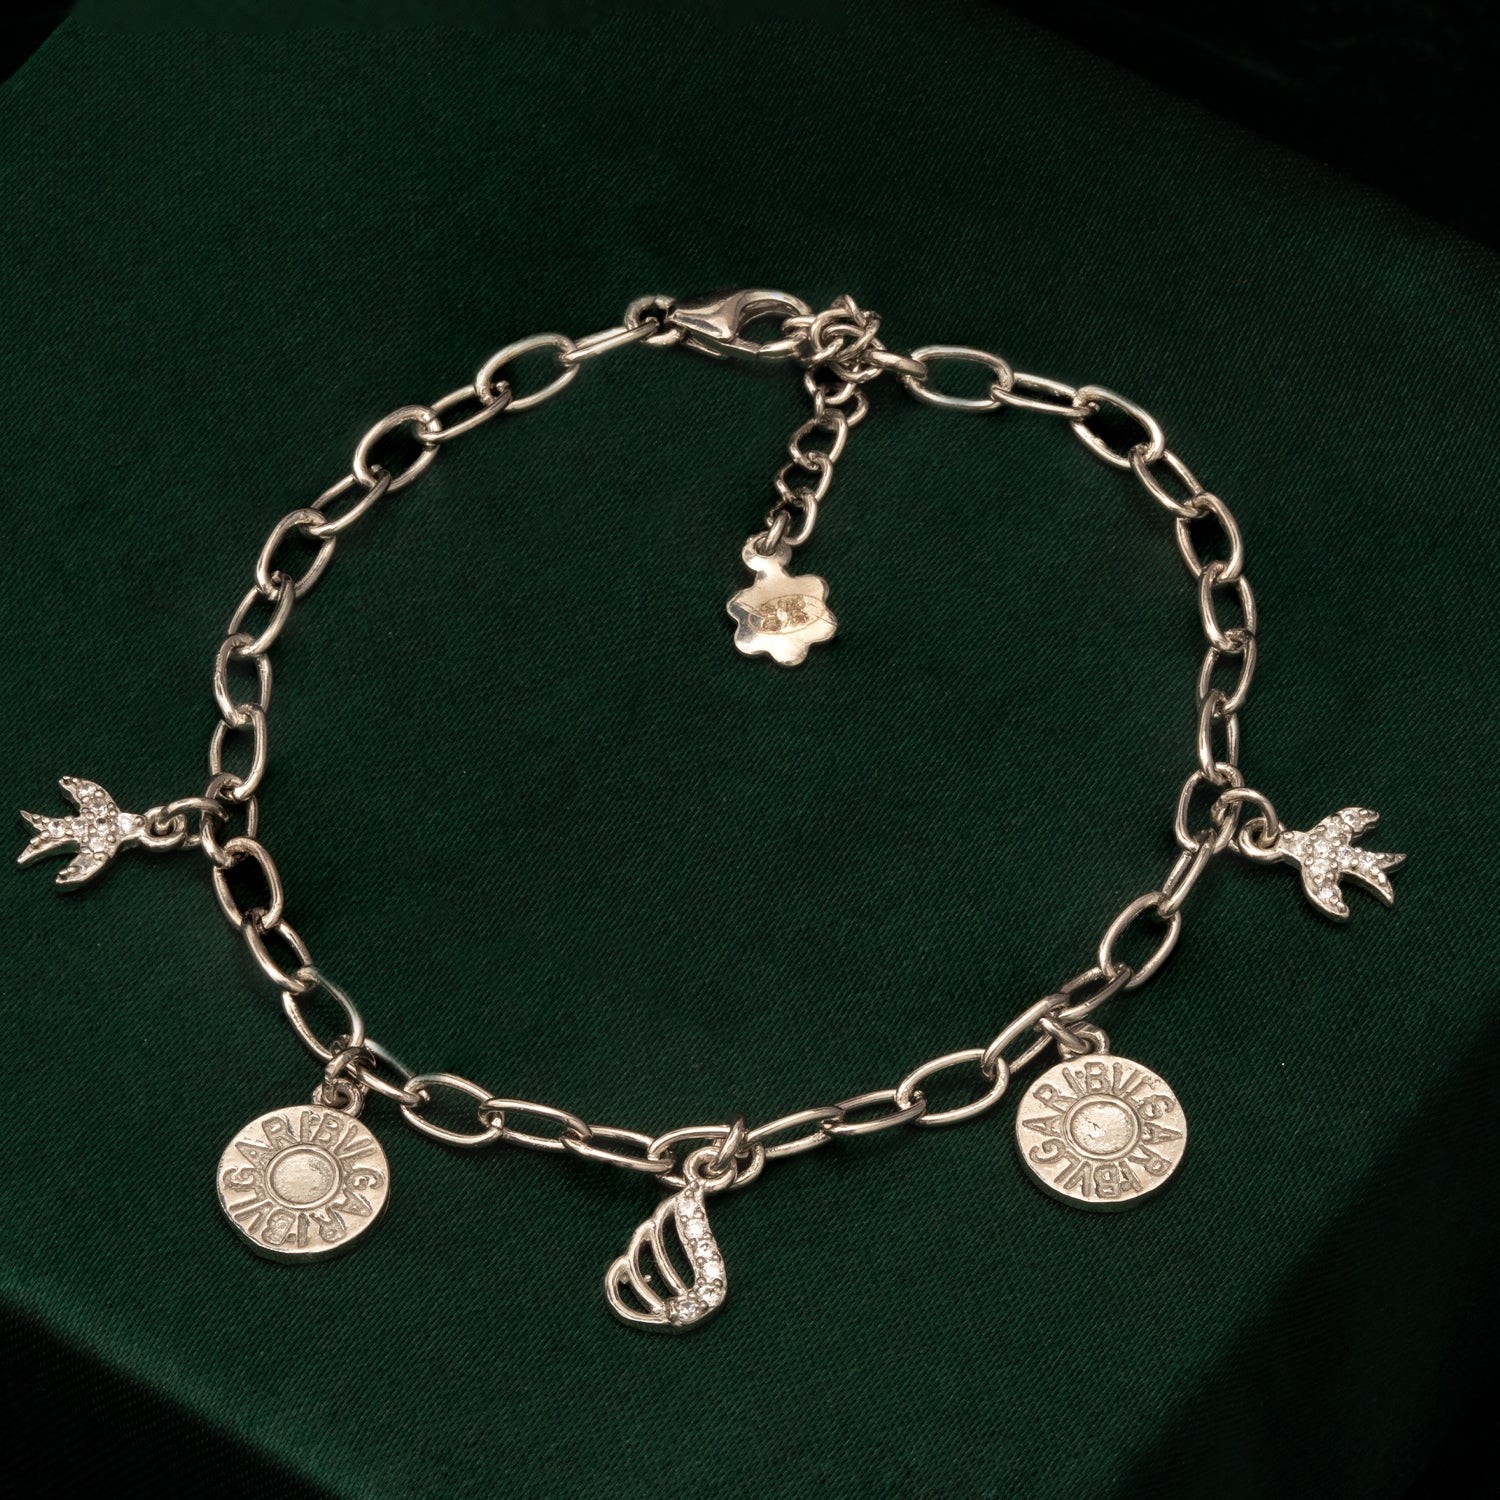 Sterling Silver Inspirational Charm Bracelet | SKU: 0018248159